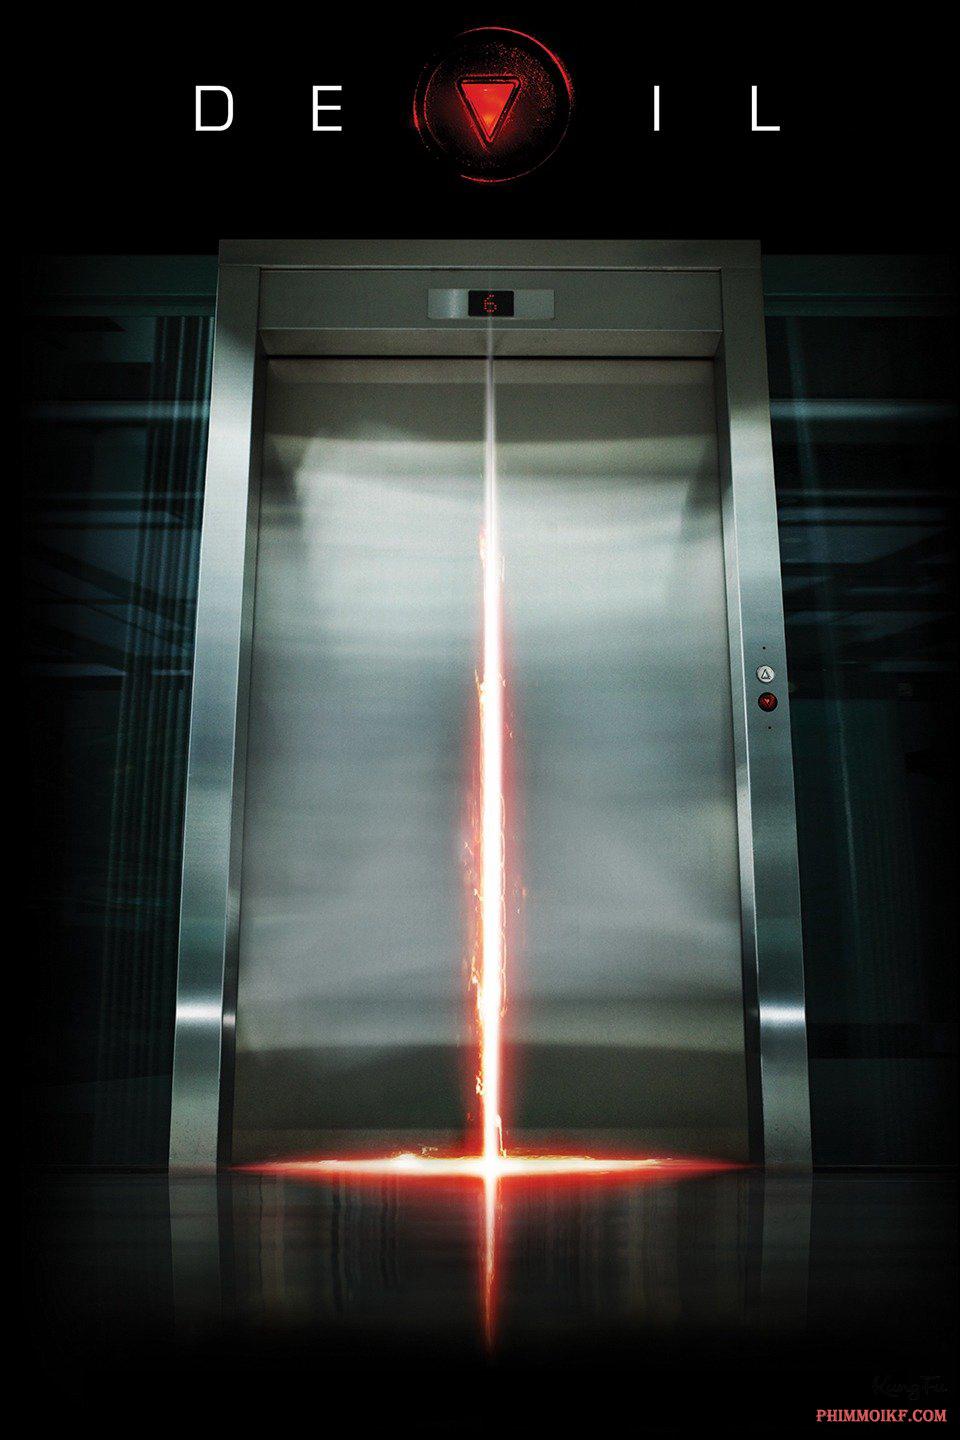 Quỷ dữ trong thang máy